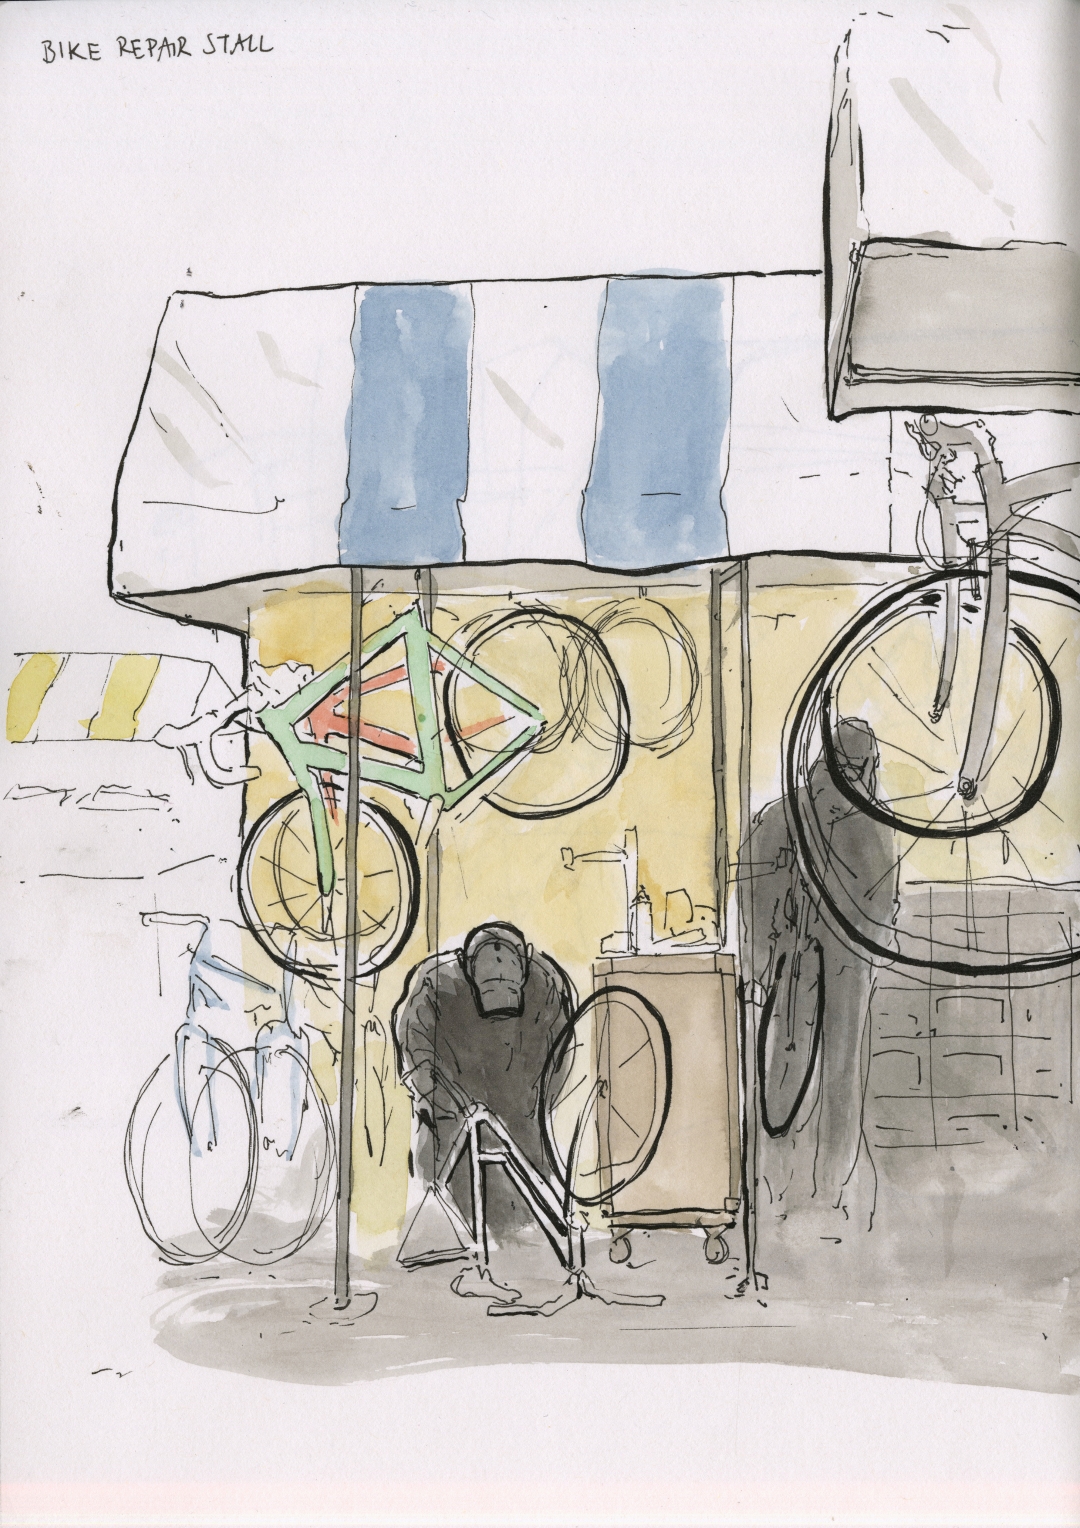 ‘The Bikeman’ - Bike repair stall